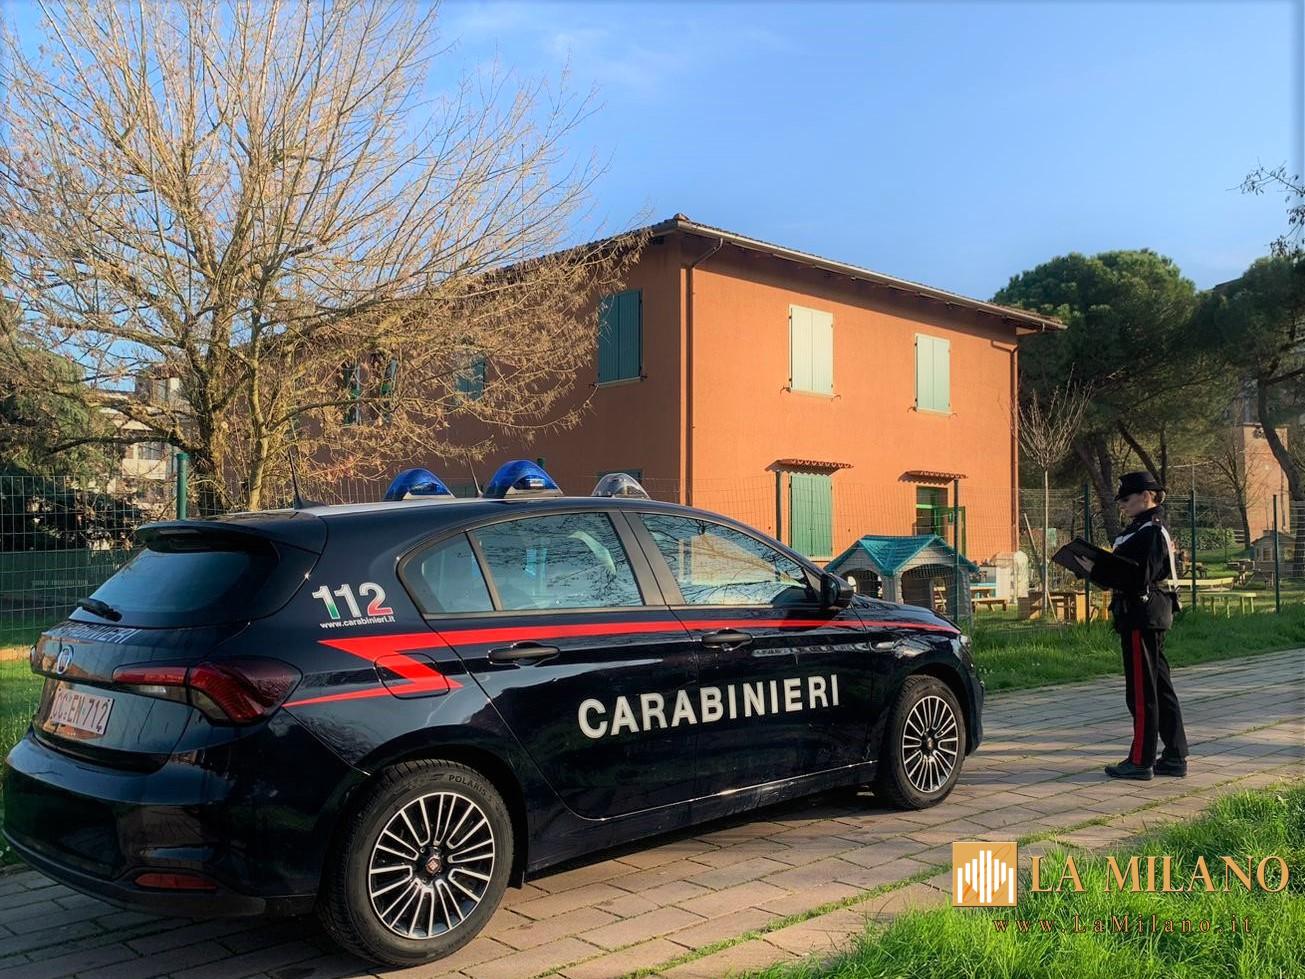 Scandalo a San Lazzaro di Savena (BO): uomo di 52 anni sorpreso in atto osceno in parco pubblico, Carabinieri intervengono.